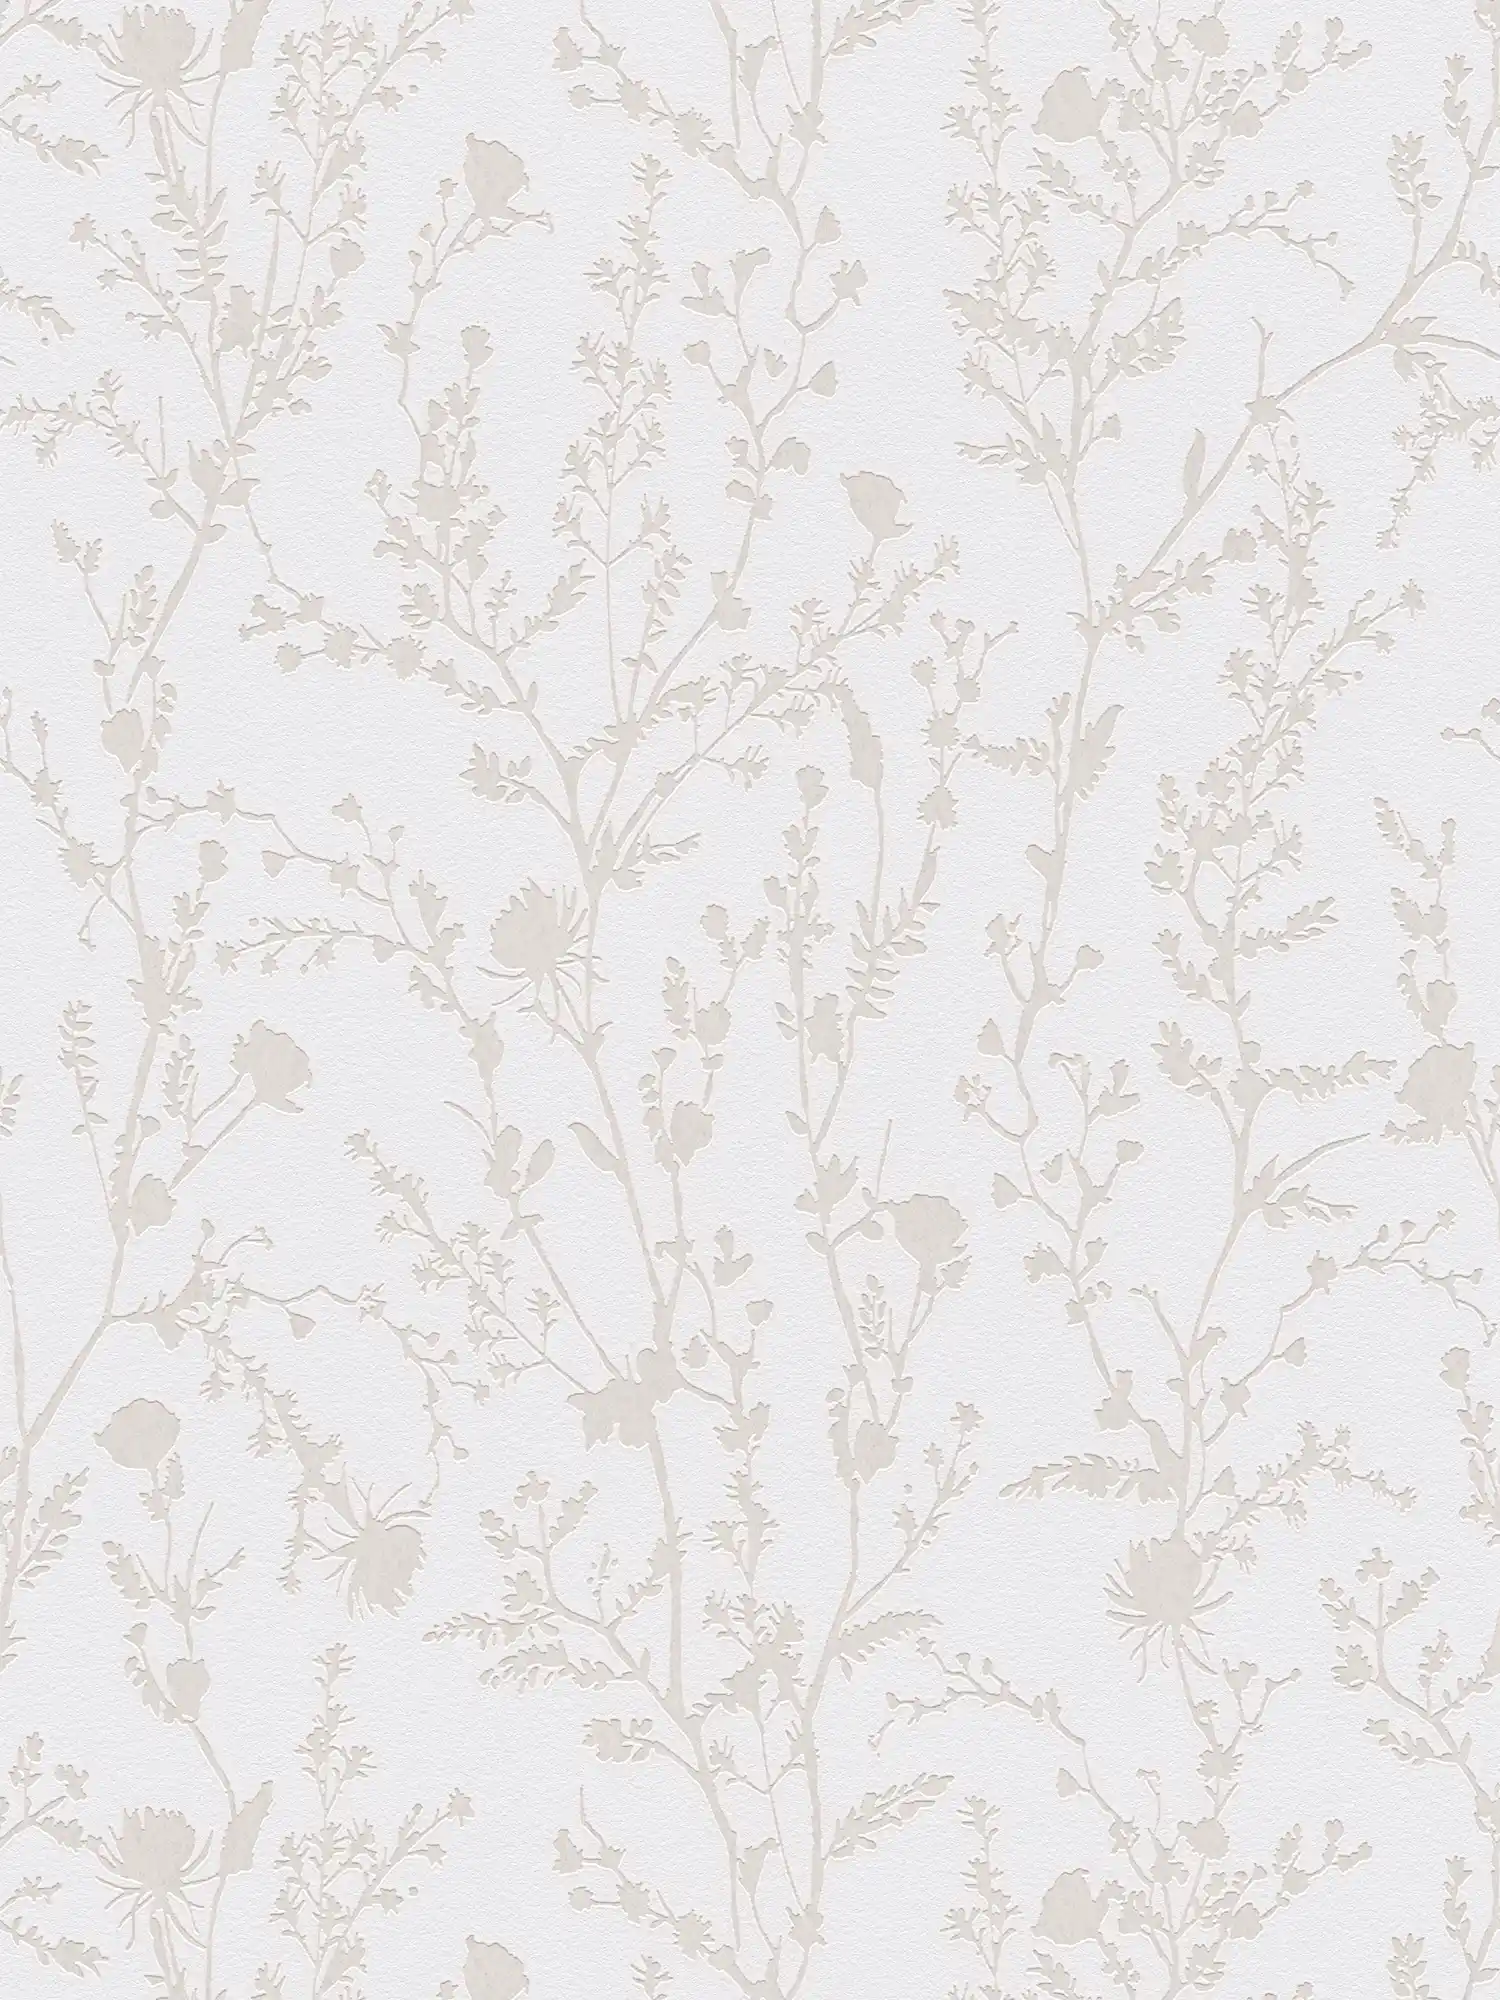 Vliestapete mit floraler Bemusterung – Hellgrau, Weiß
